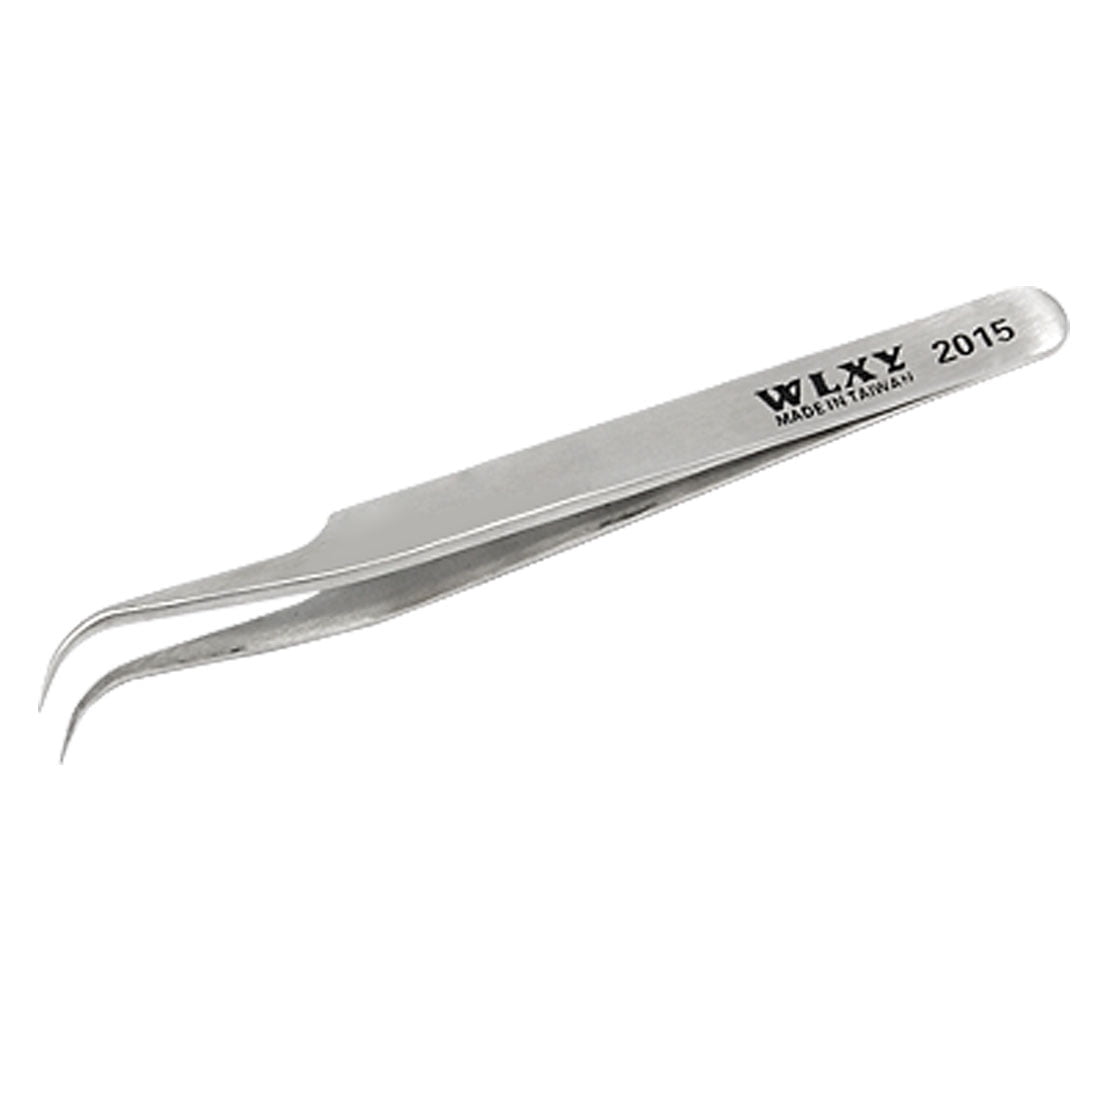 Stainless Steel Mini Tweezers Multi-purpose Medical Tool Pliers Angled 45 Deg… 